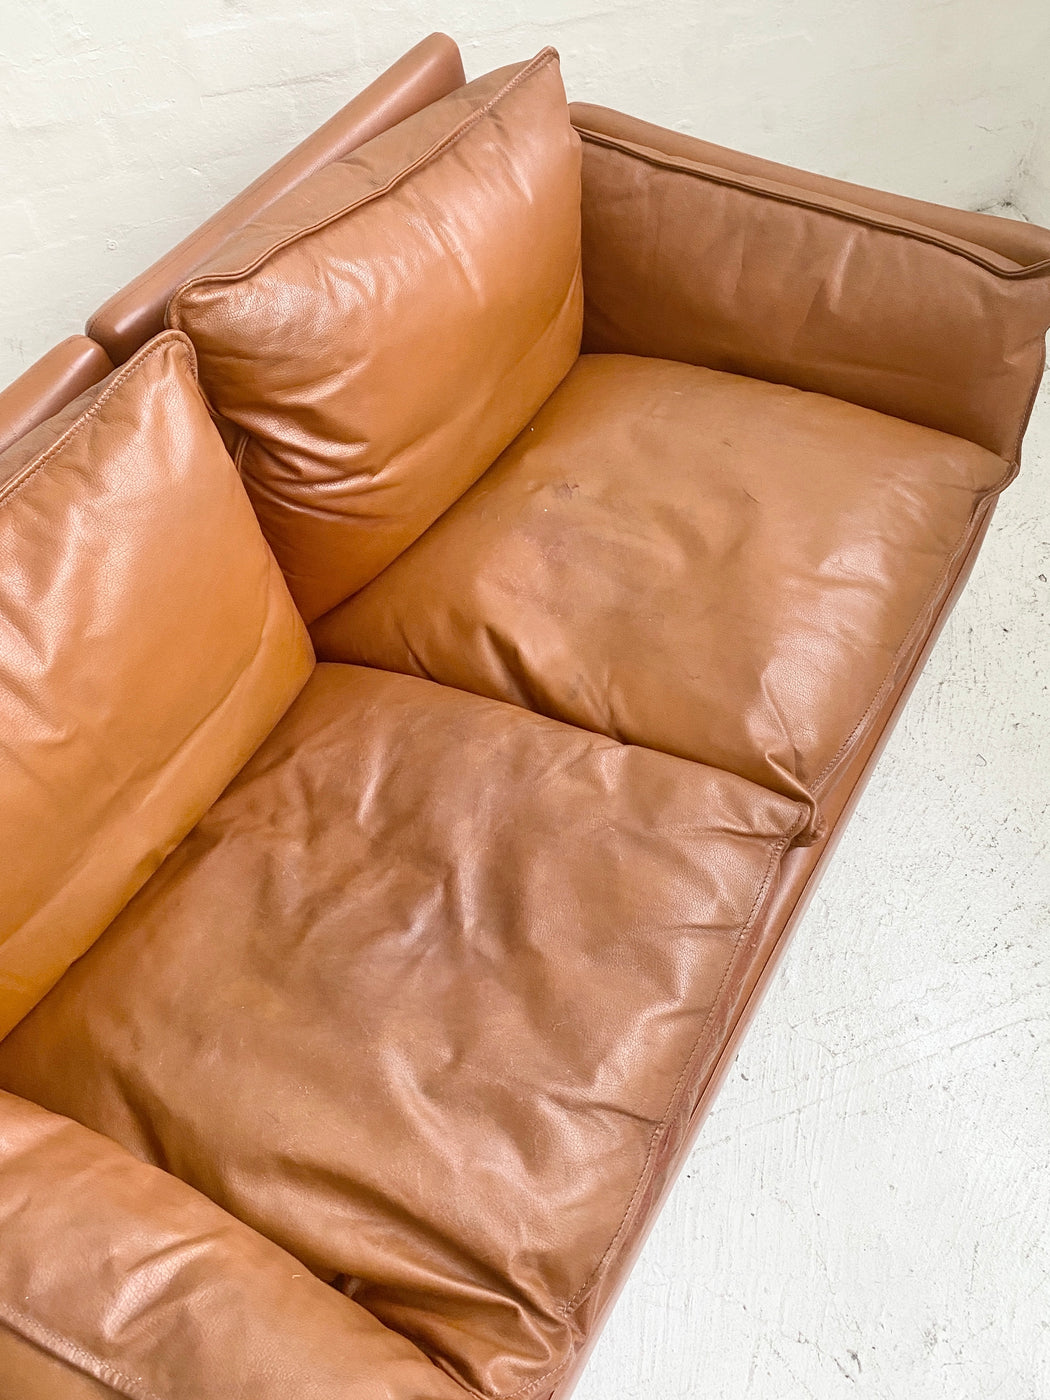 Danish 1970s Leather Sofa